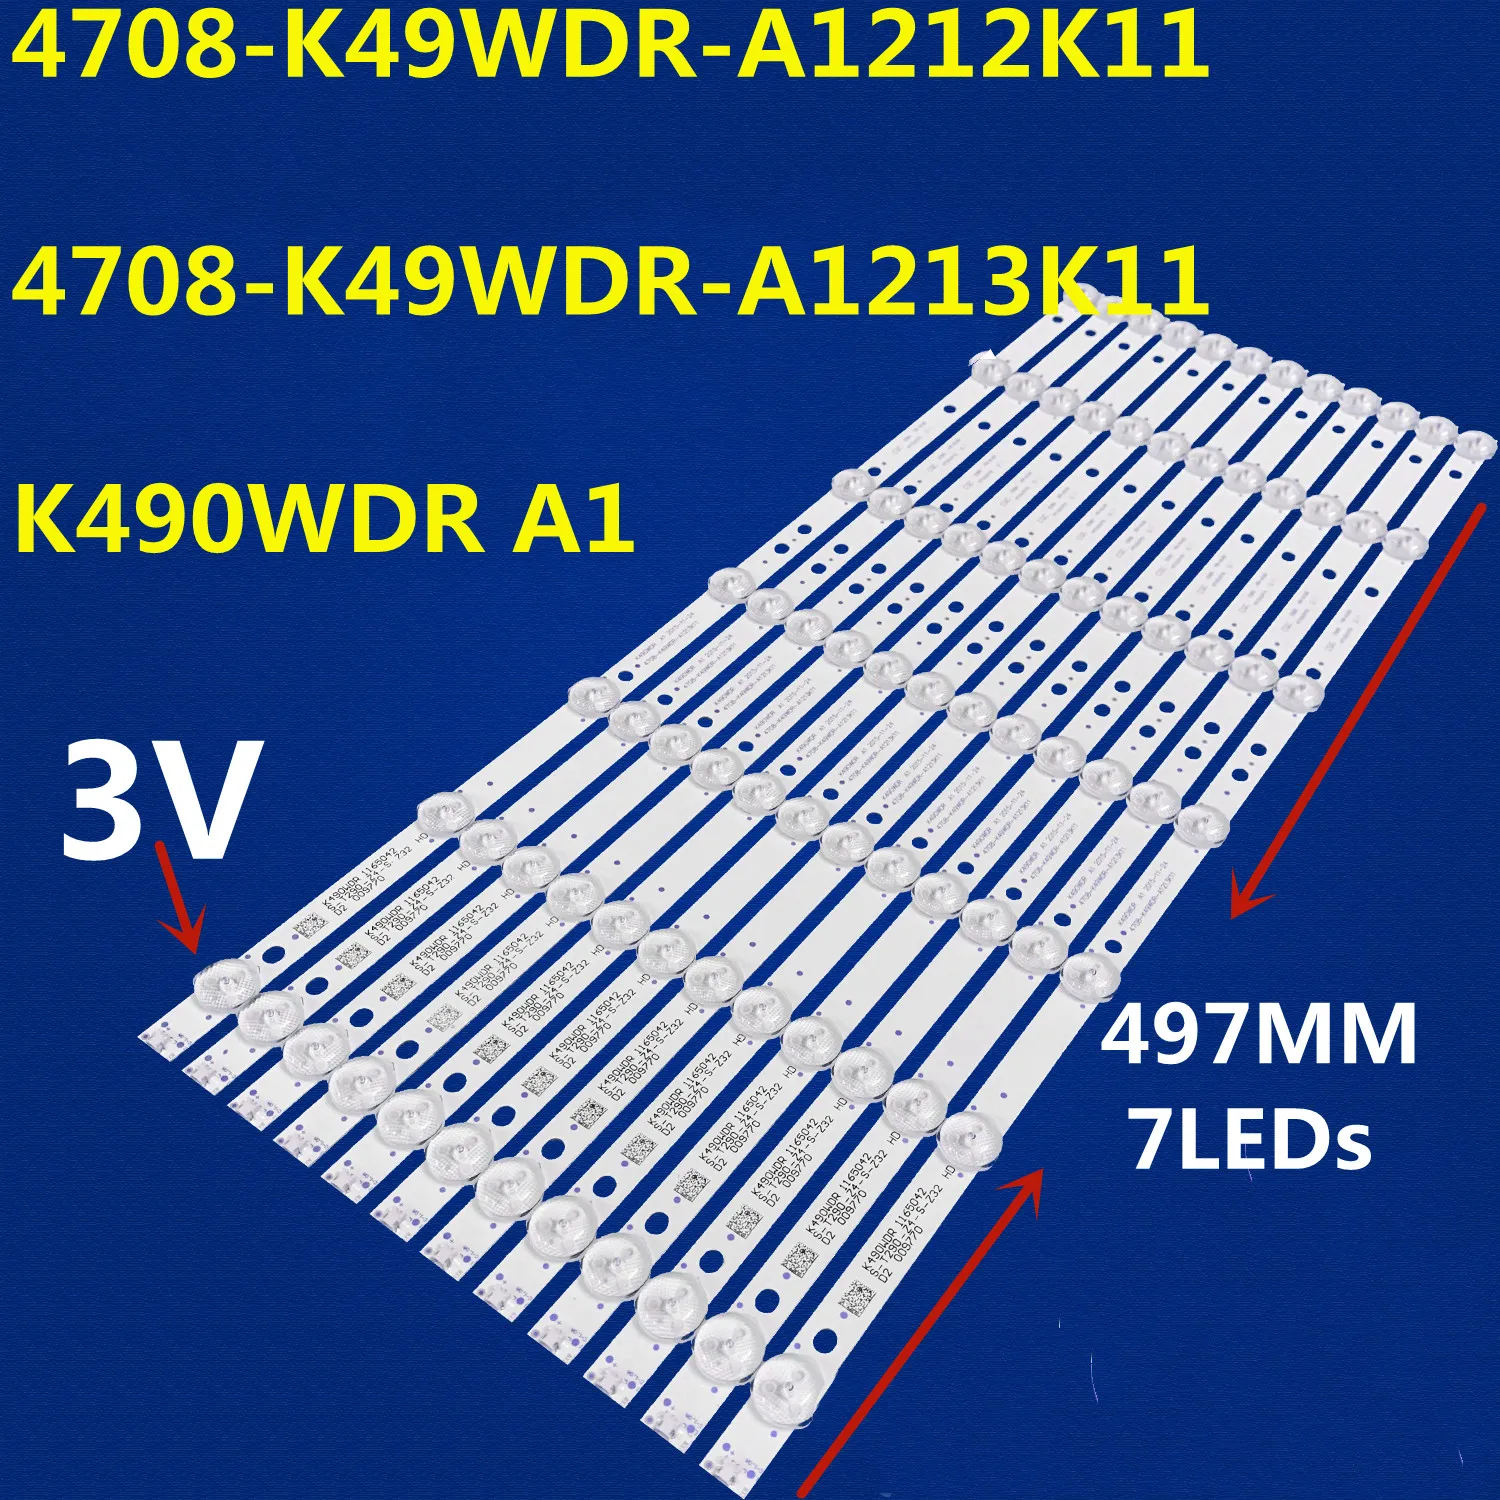 

12 шт., Светодиодная лента для подсветки 49L621U K490WDR A1 4708-K49WDR-A1212K11 4708-K49WDR-A1213K11